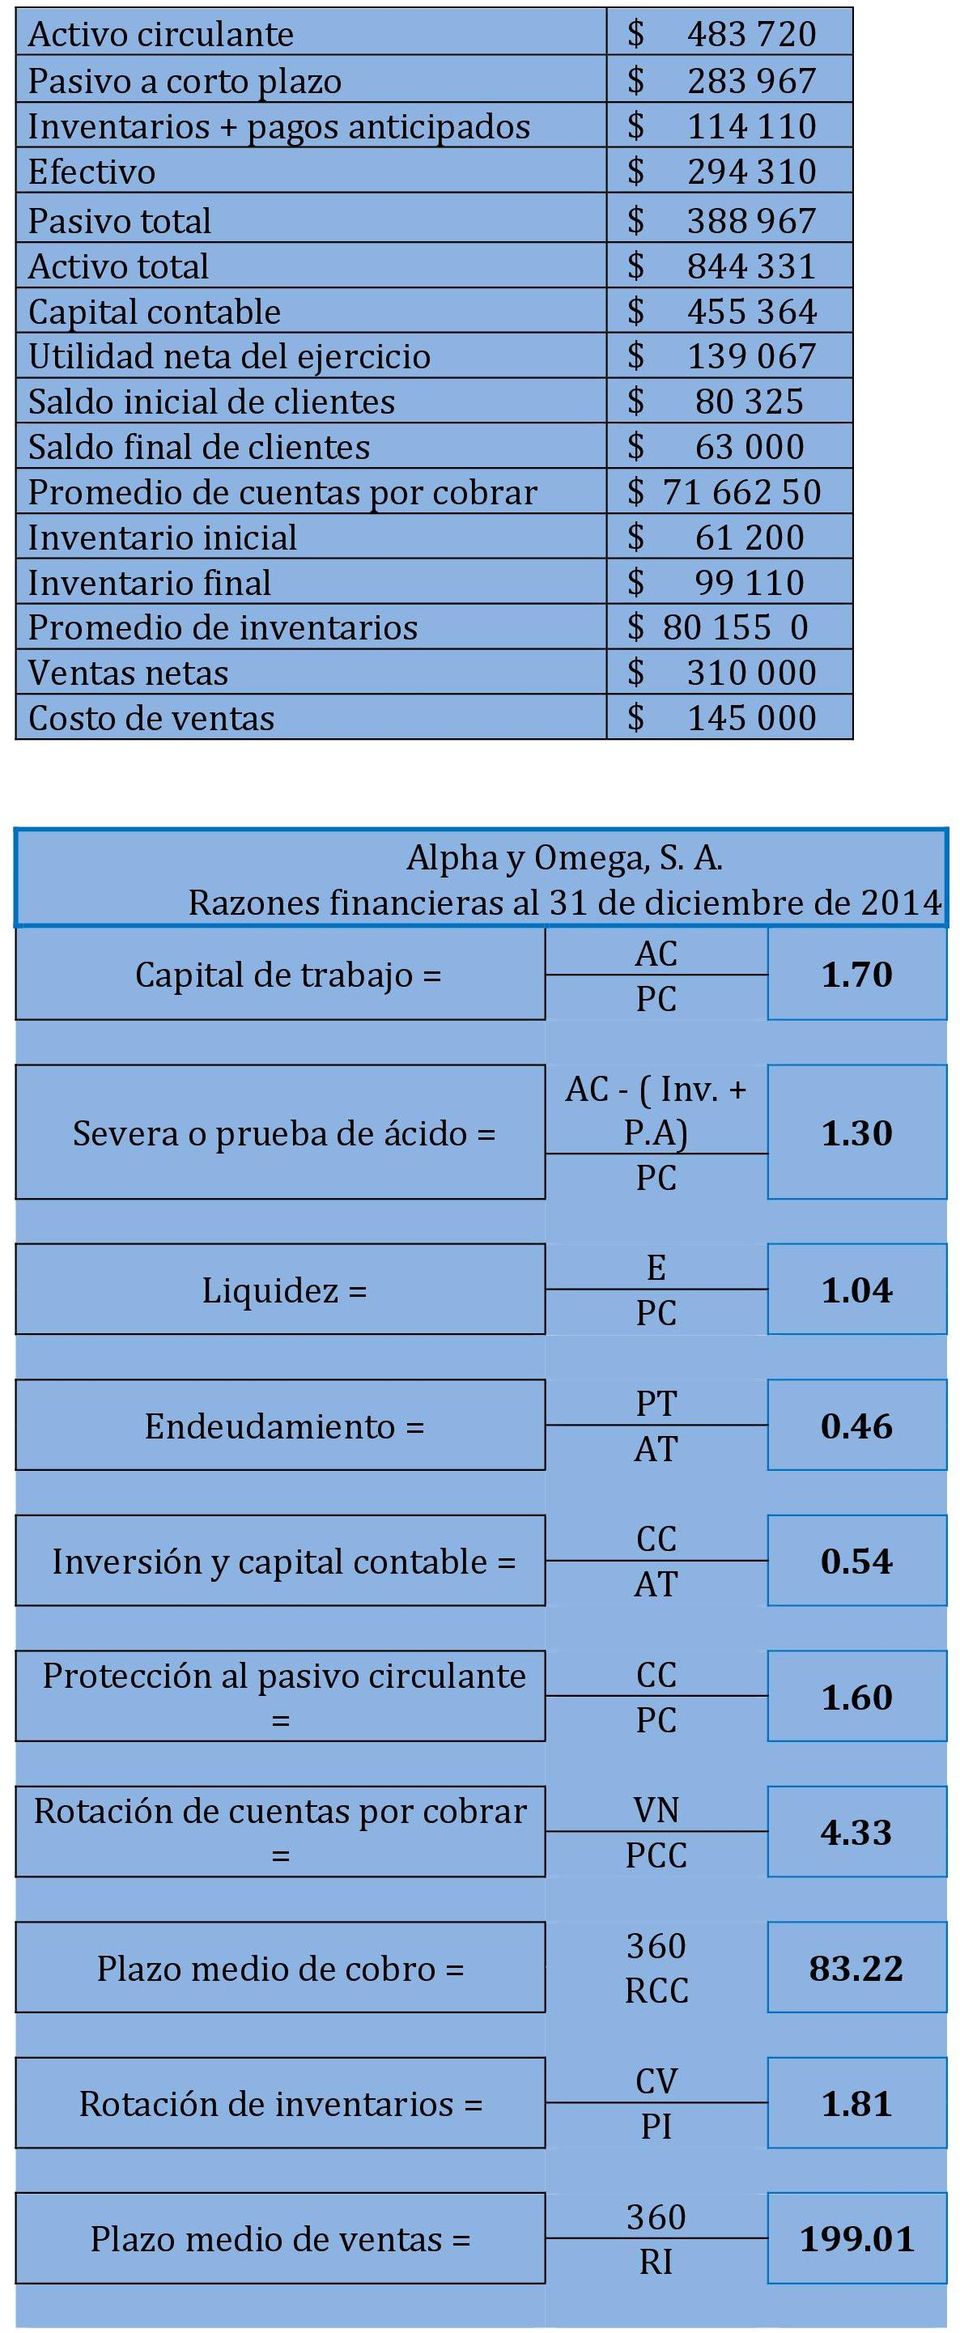 110 Promedio de inventarios $ 80 155 0 Ventas netas $ 310 000 Costo de ventas $ 145 000 Alpha y Omega, S. A. Razones financieras al 31 de diciembre de 2014 AC Capital de trabajo = 1.